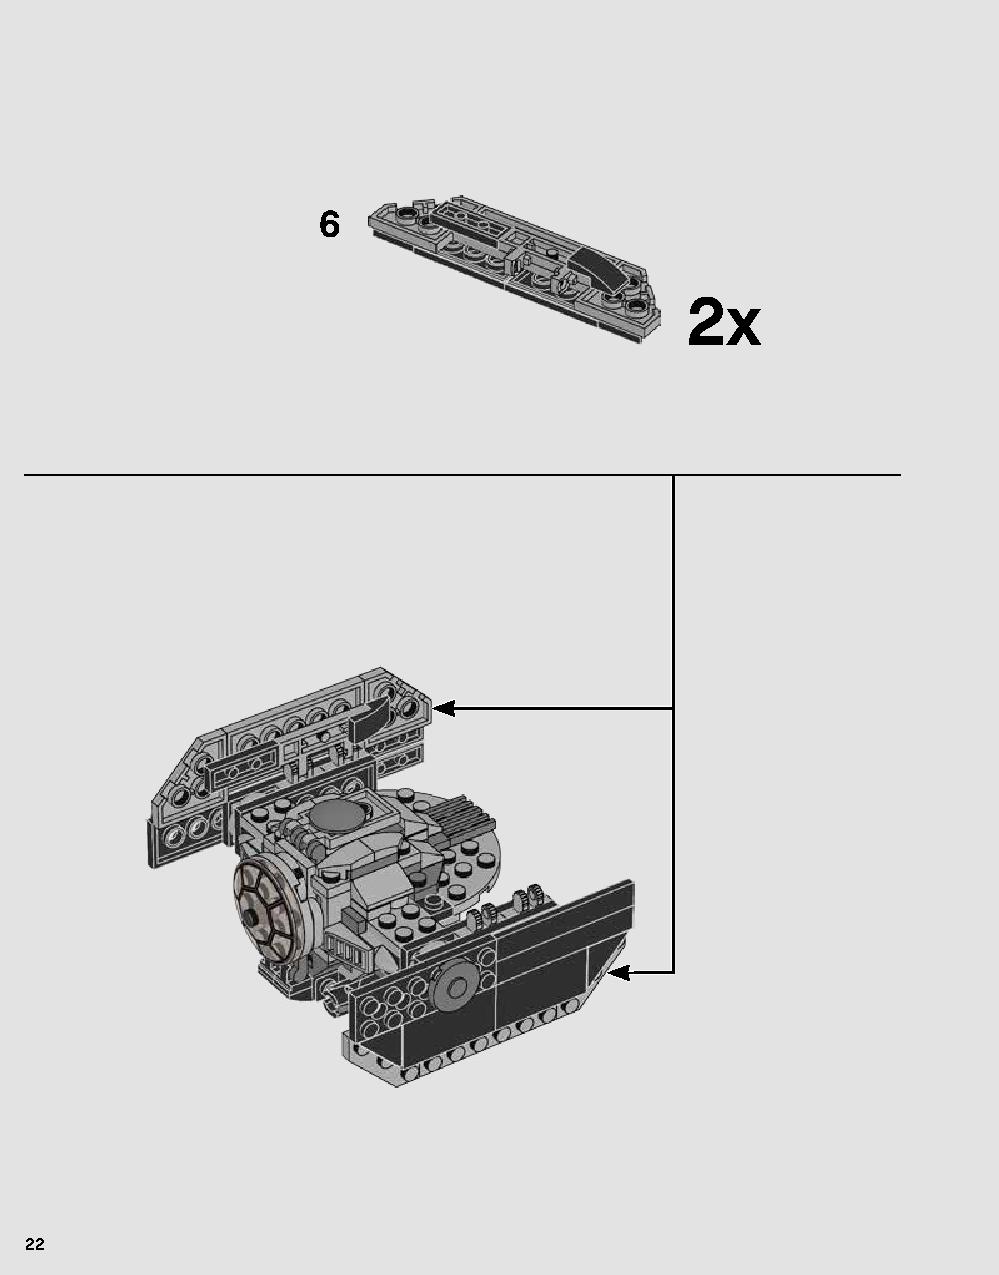 ダース・ベイダーの城 75251 レゴの商品情報 レゴの説明書・組立方法 22 page